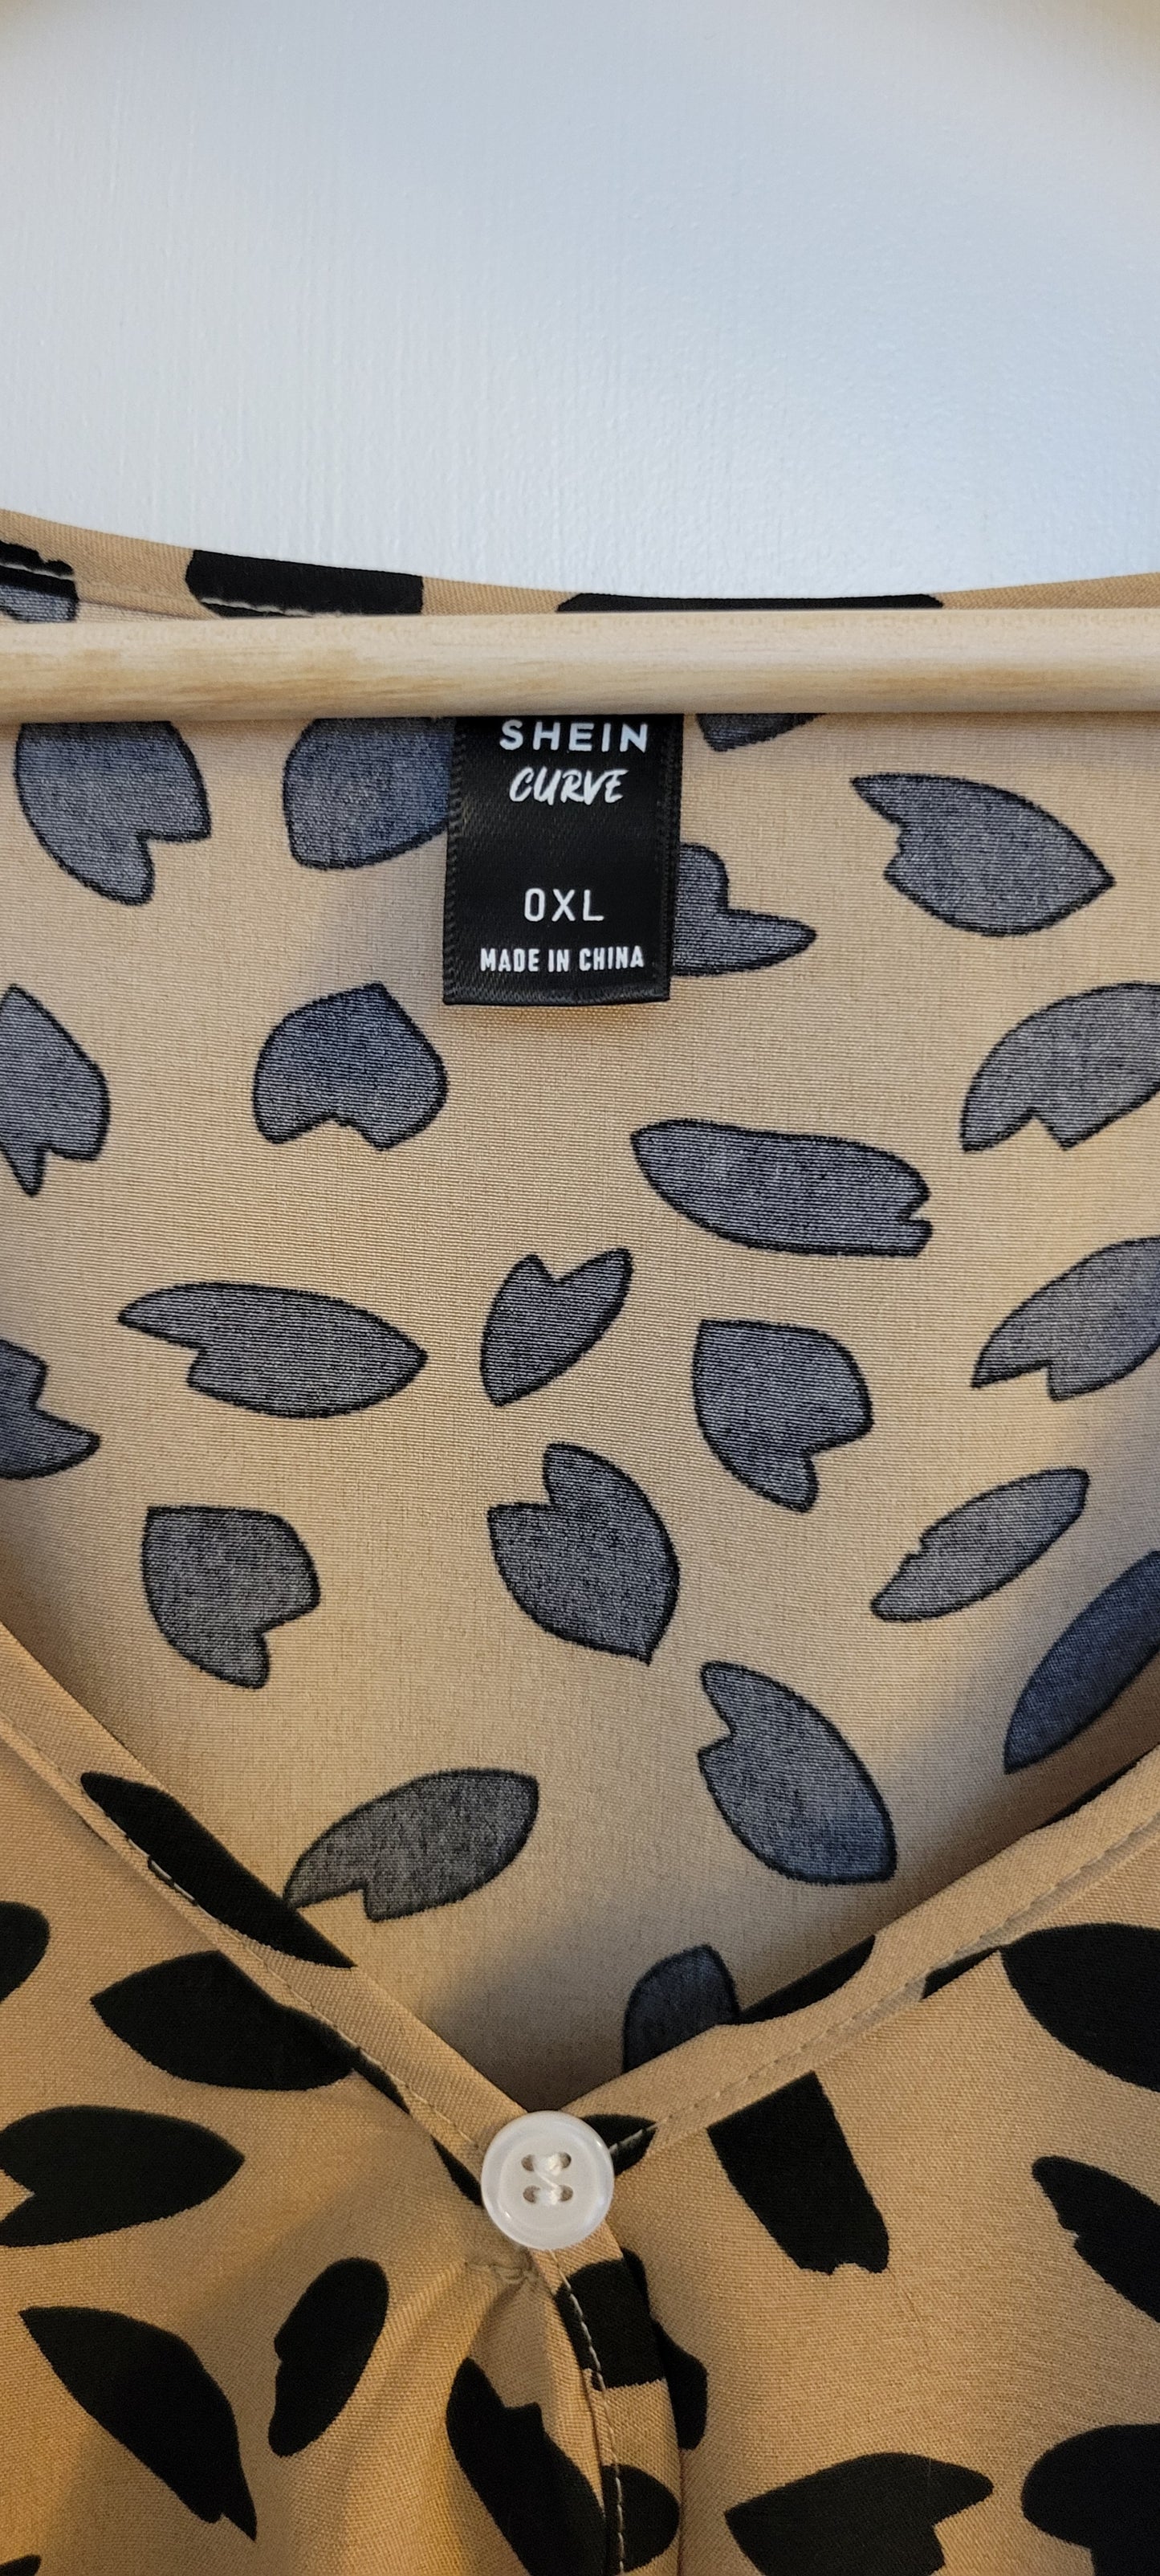 Shein Cheetah Print Long Sleeve Shirt Dress and Belt, Women's Size 0XL